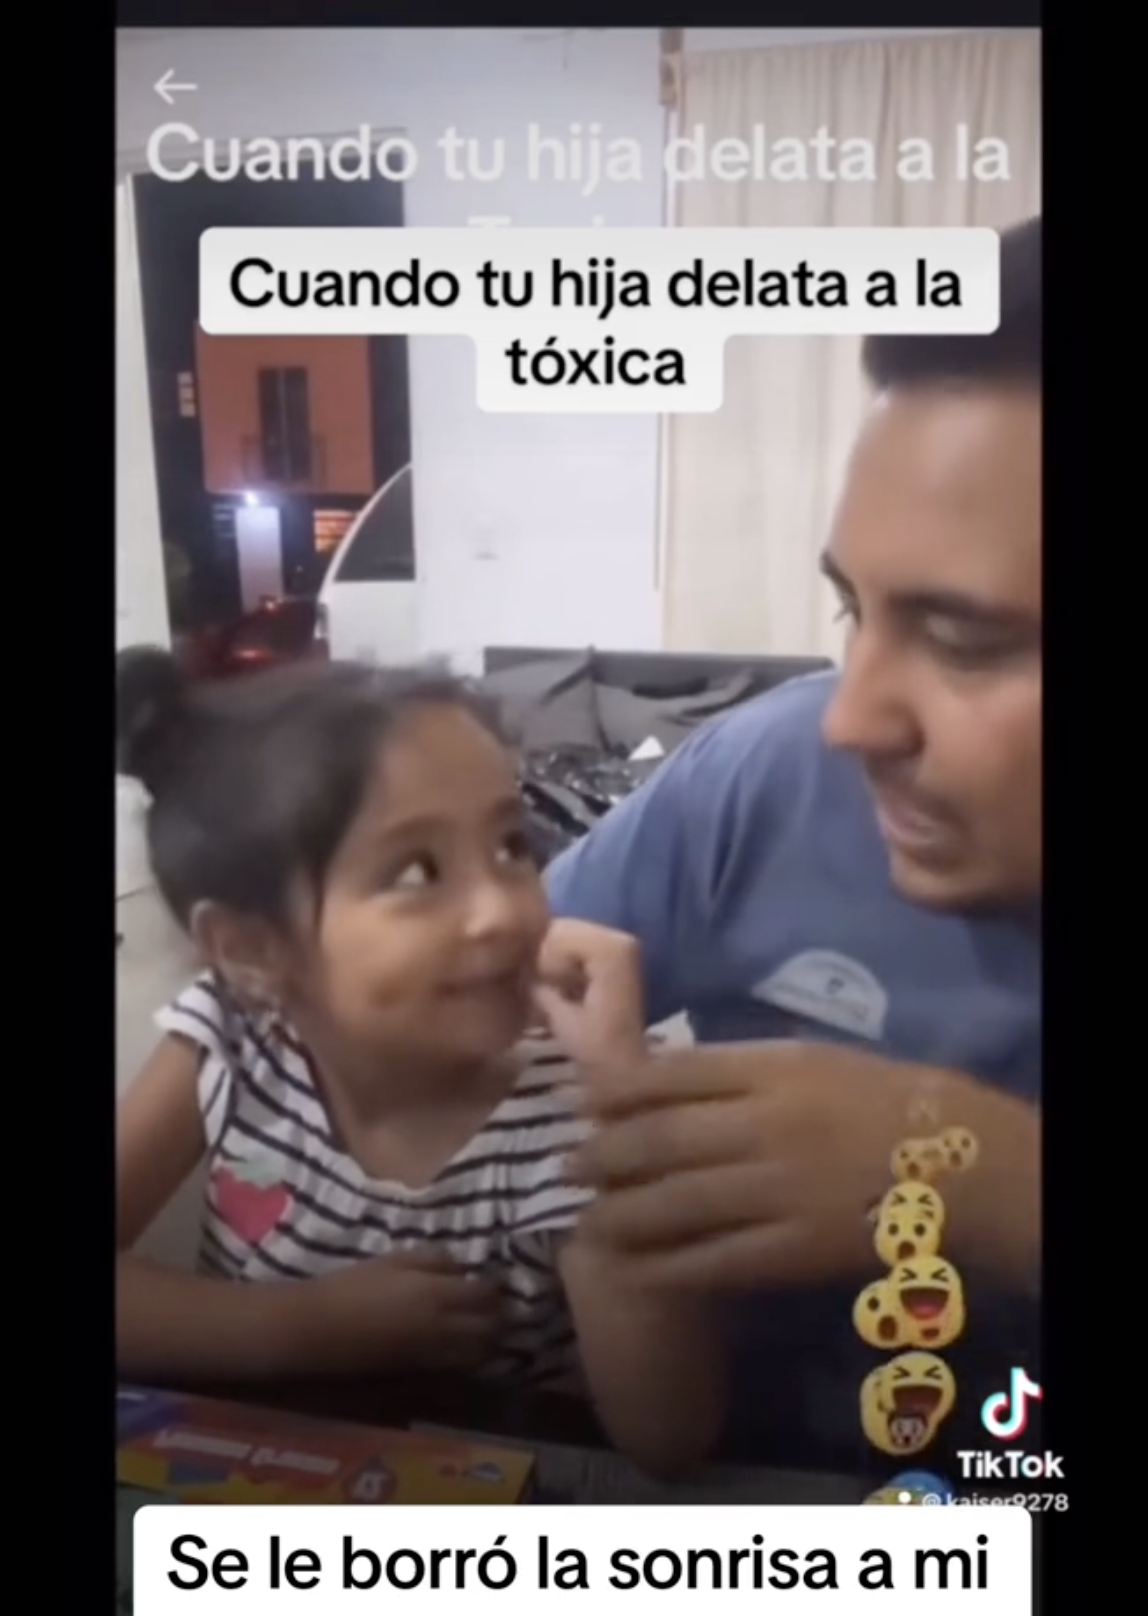 Der mexikanische Vater schaut seine Tochter an und fordert sie auf, nicht mit ihrer Hand herumzufuchteln. | Source: tiktok.com/@kaiser927